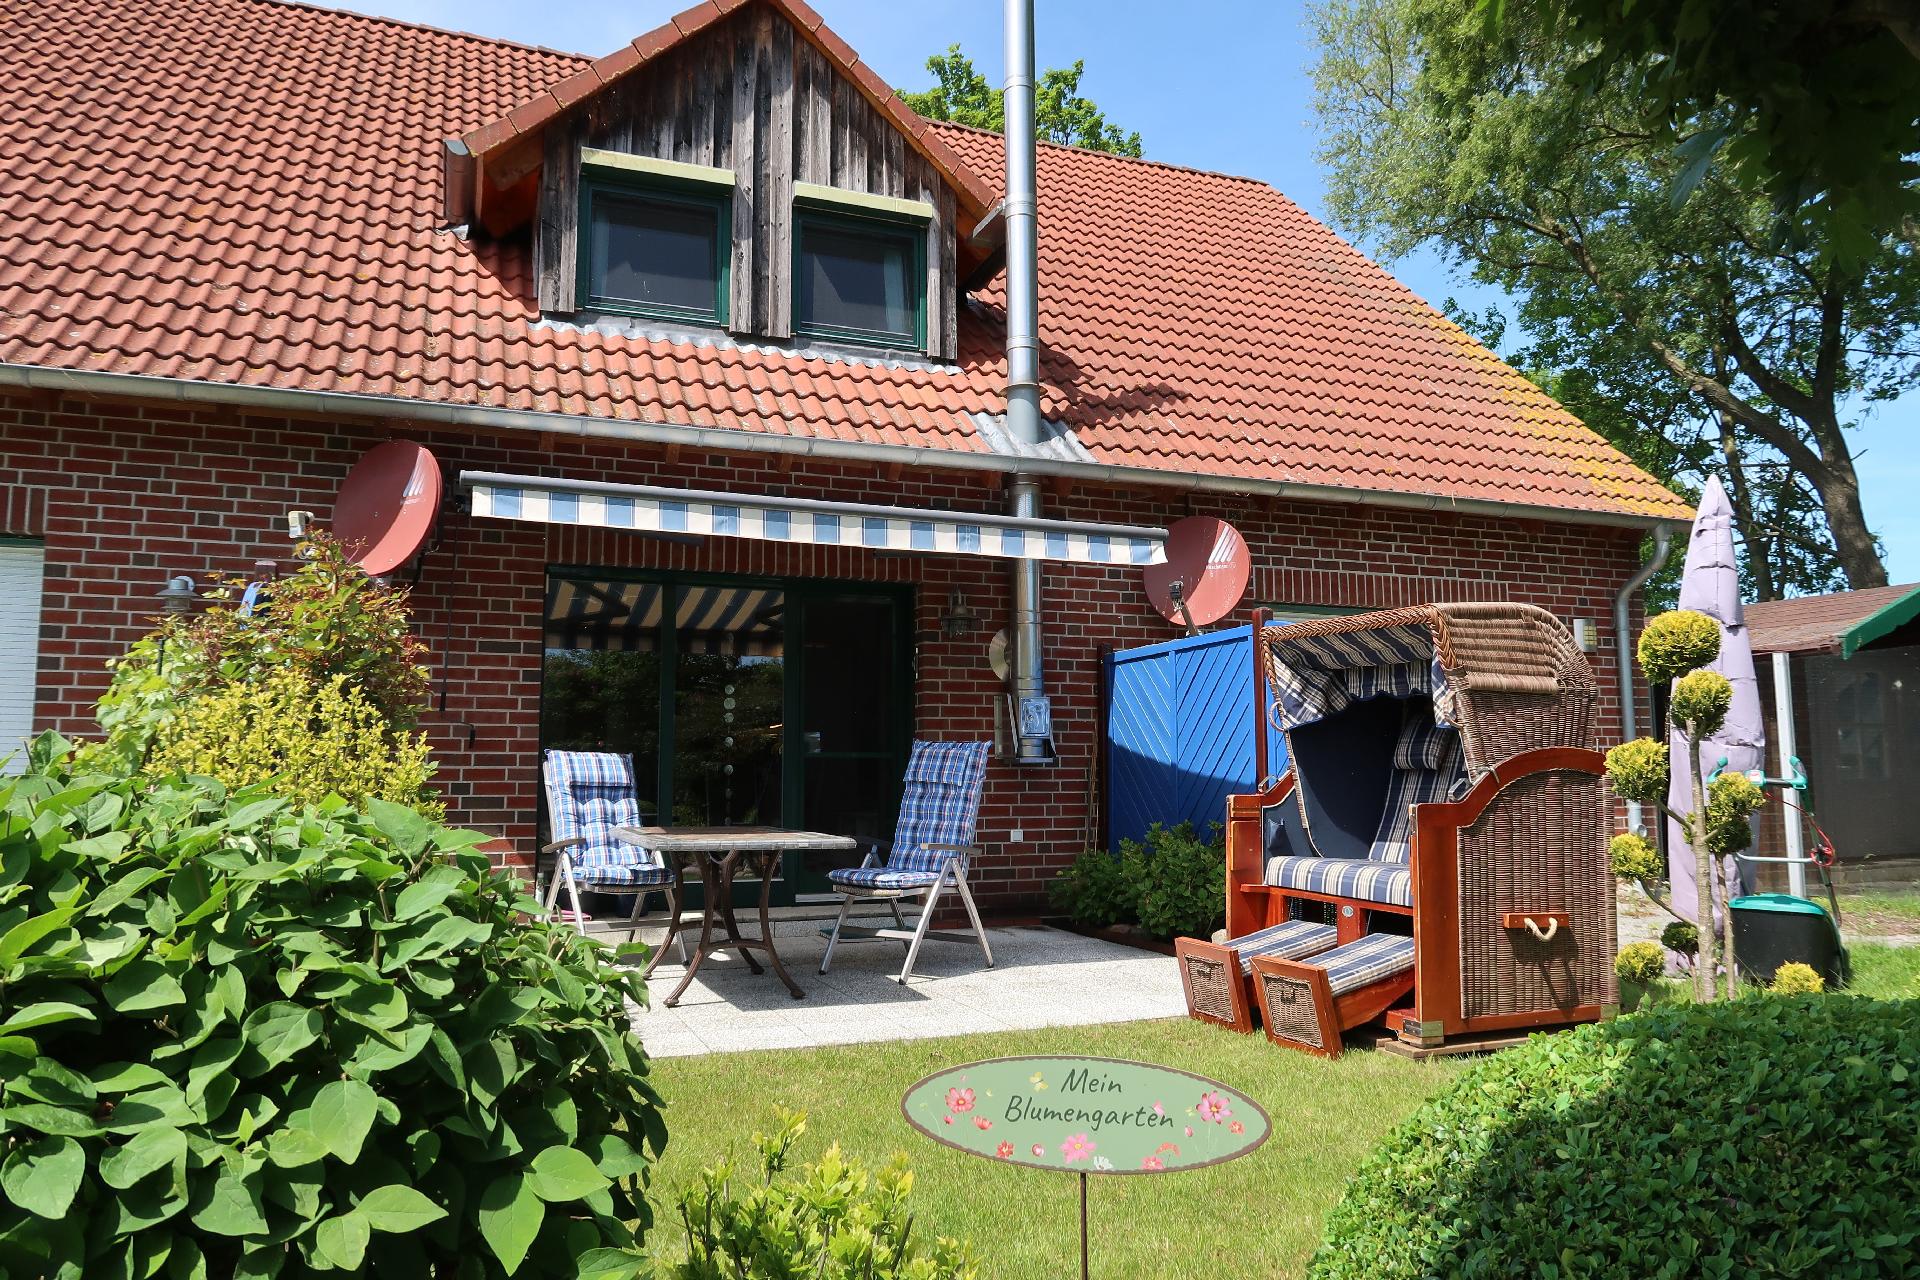 Ferienhaus in Redewisch mit Garten, Grill und Terr Ferienhaus in Deutschland